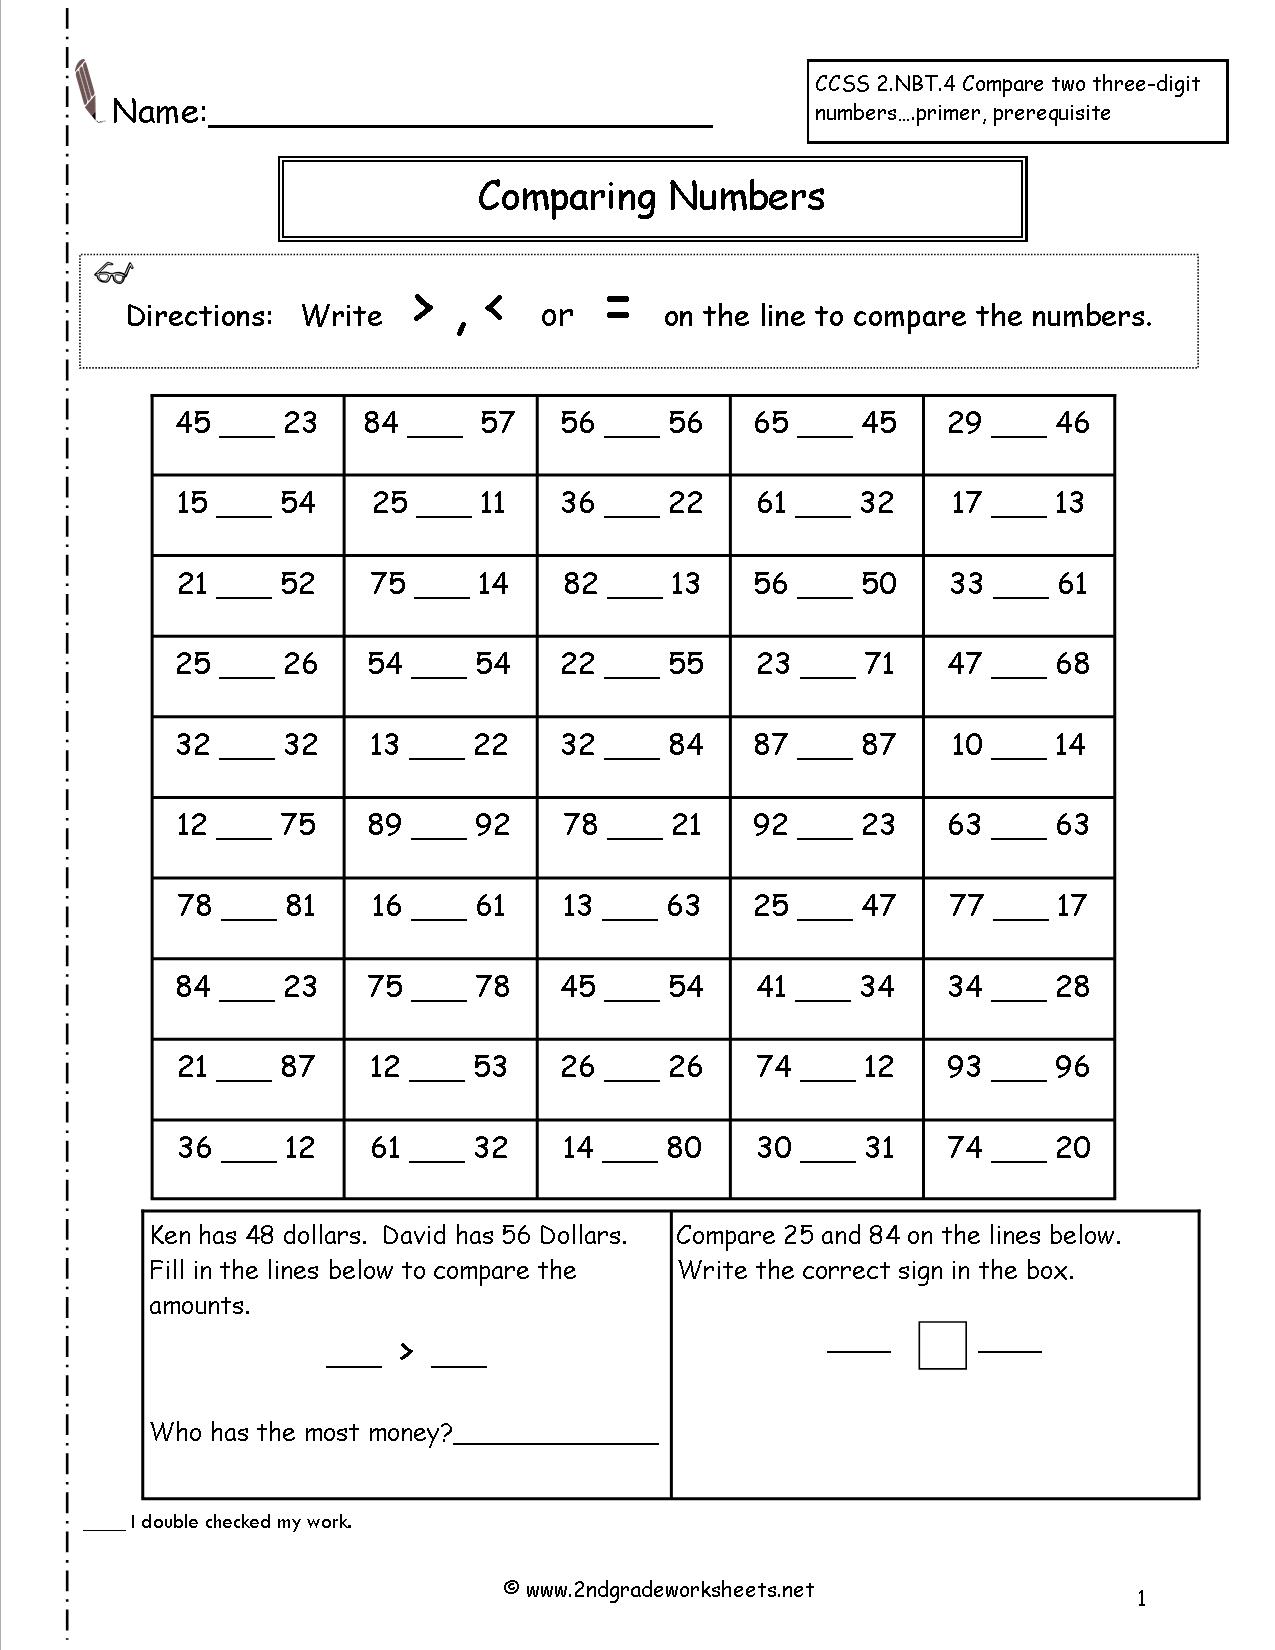 12 Best Images of Second Grade Number Line Worksheets - Number Line